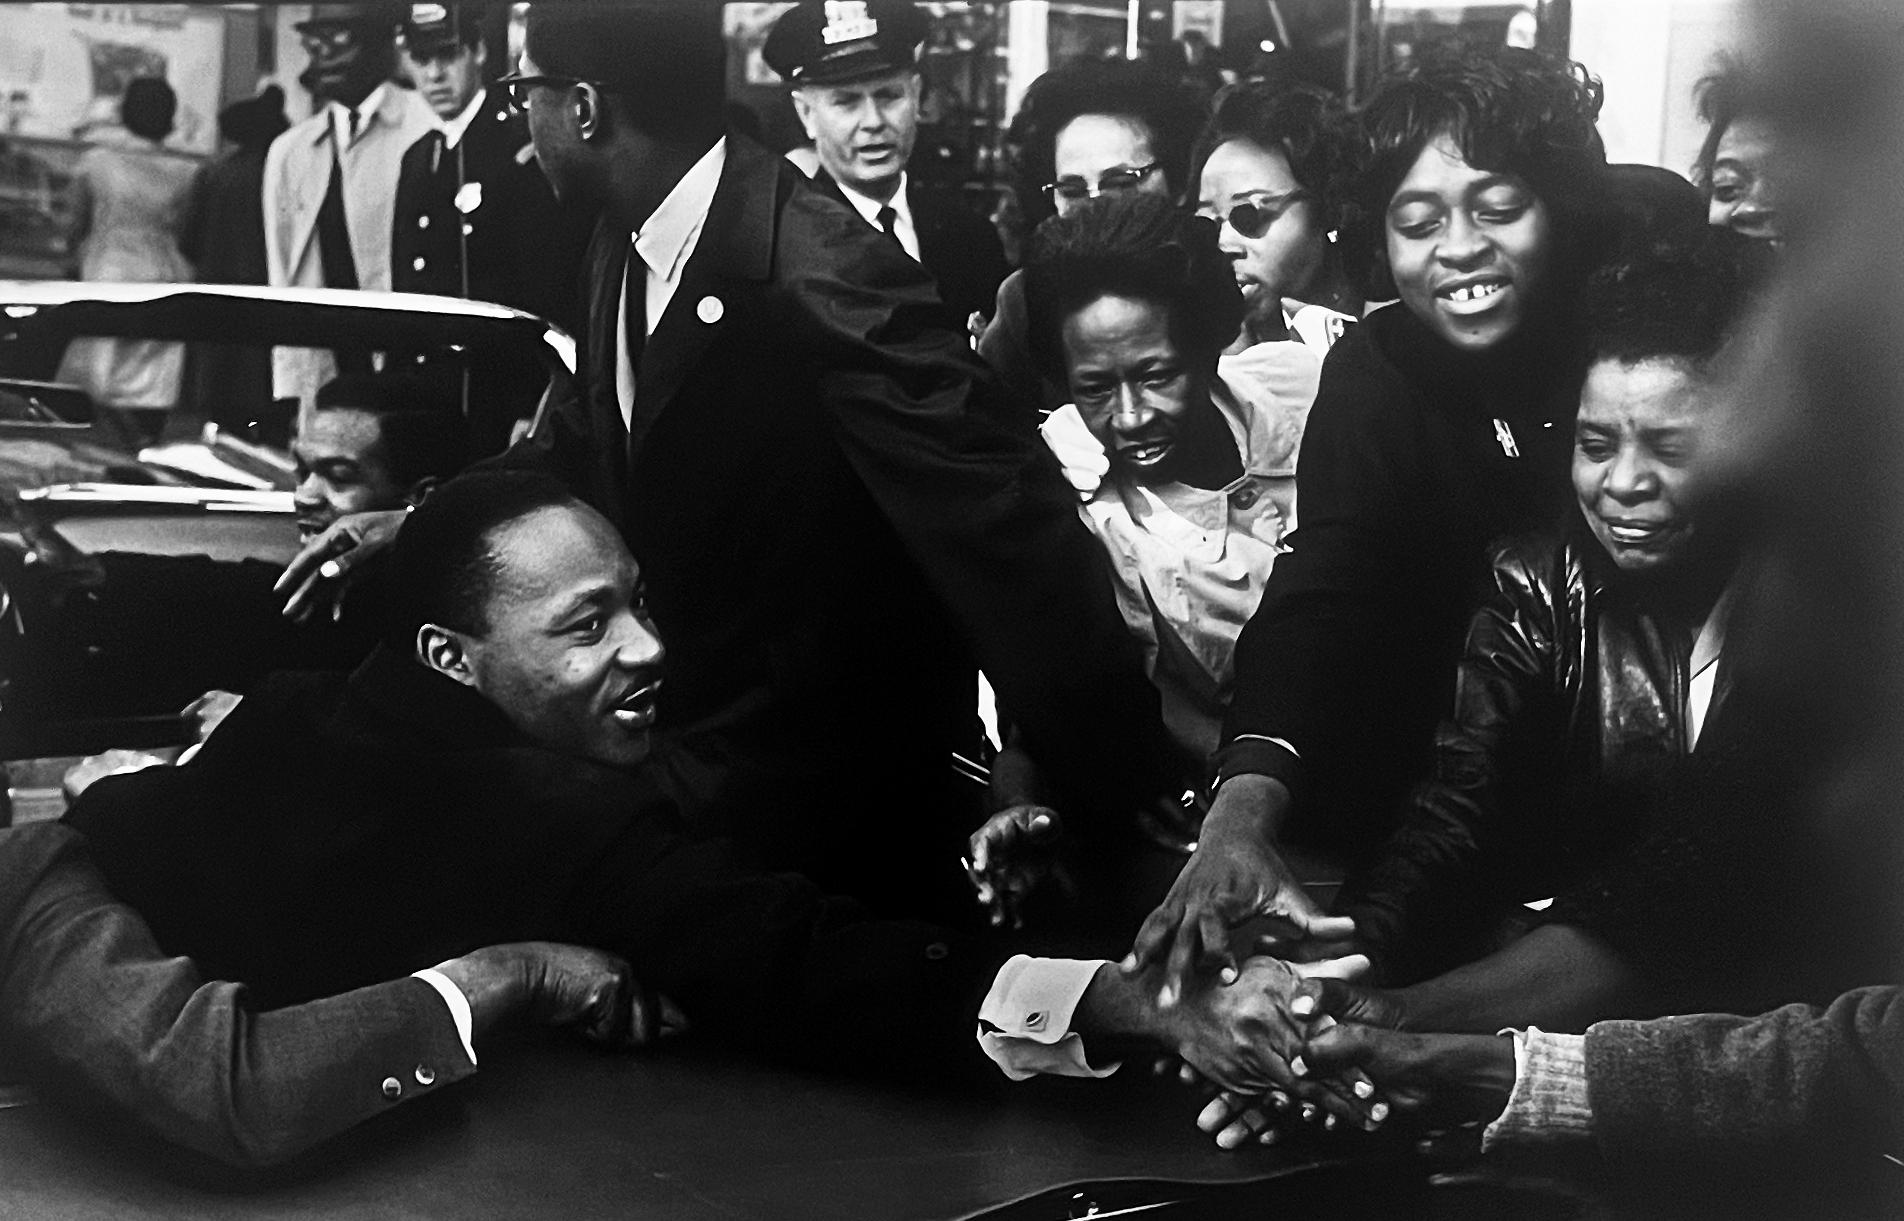 Martin Luther King (MLK), 1964 von Leonard Freed ist eine ikonische Schwarz-Weiß-Dokumentarfotografie, ein Porträt einer der einflussreichsten afroamerikanischen Persönlichkeiten und Bürgerrechtsaktivisten der 1960er Jahre und des 20.

Das Foto, 13